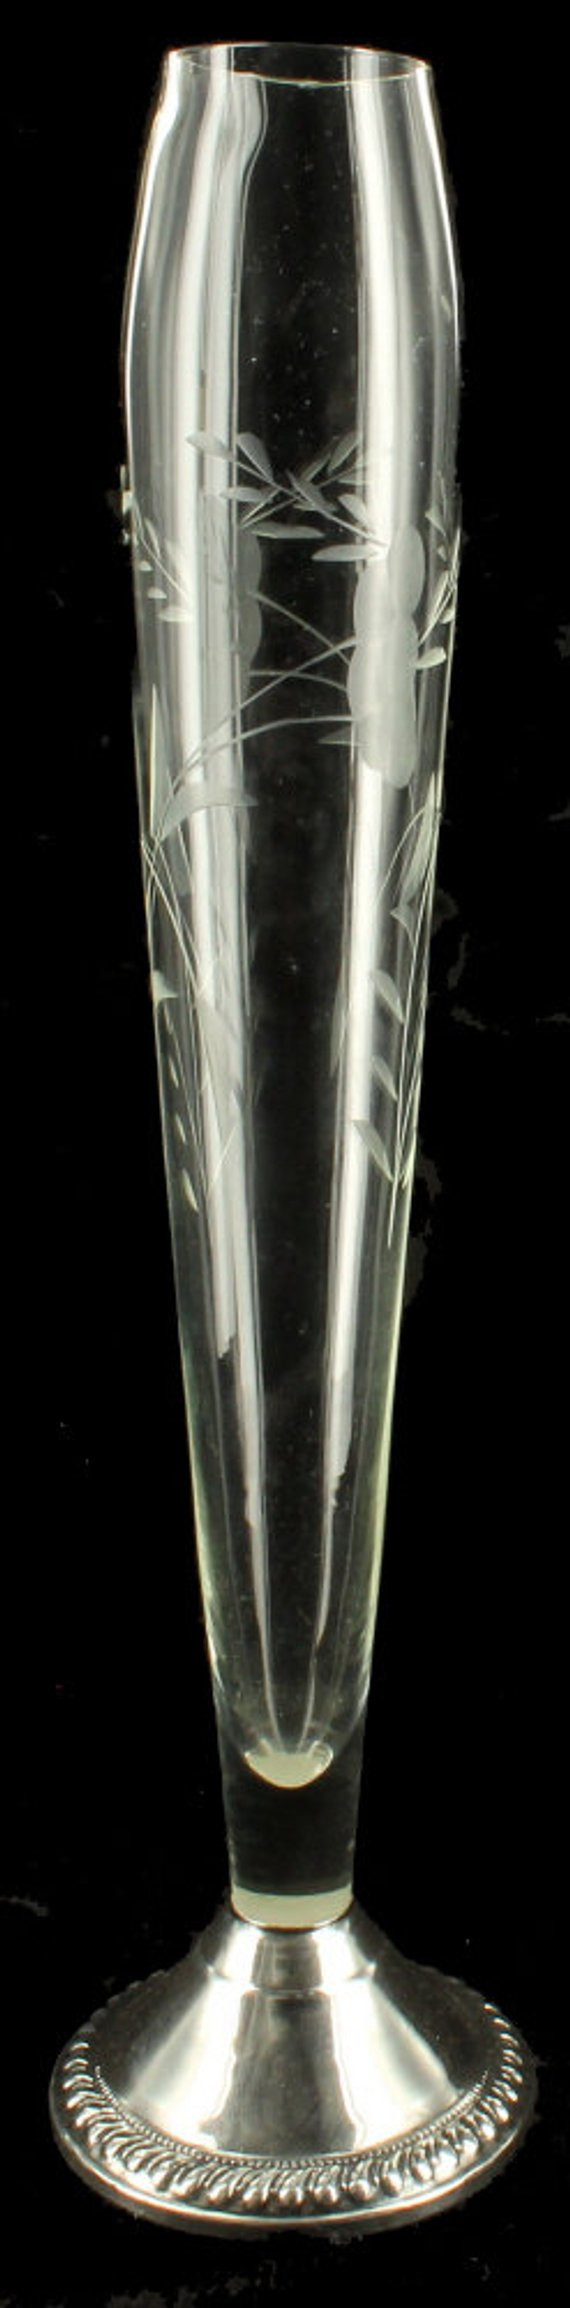 24 Elegant Antique Sterling Silver Bud Vase 2023 free download antique sterling silver bud vase of vintage art deco etched glass sterling silver base bud vase etsy throughout image 0